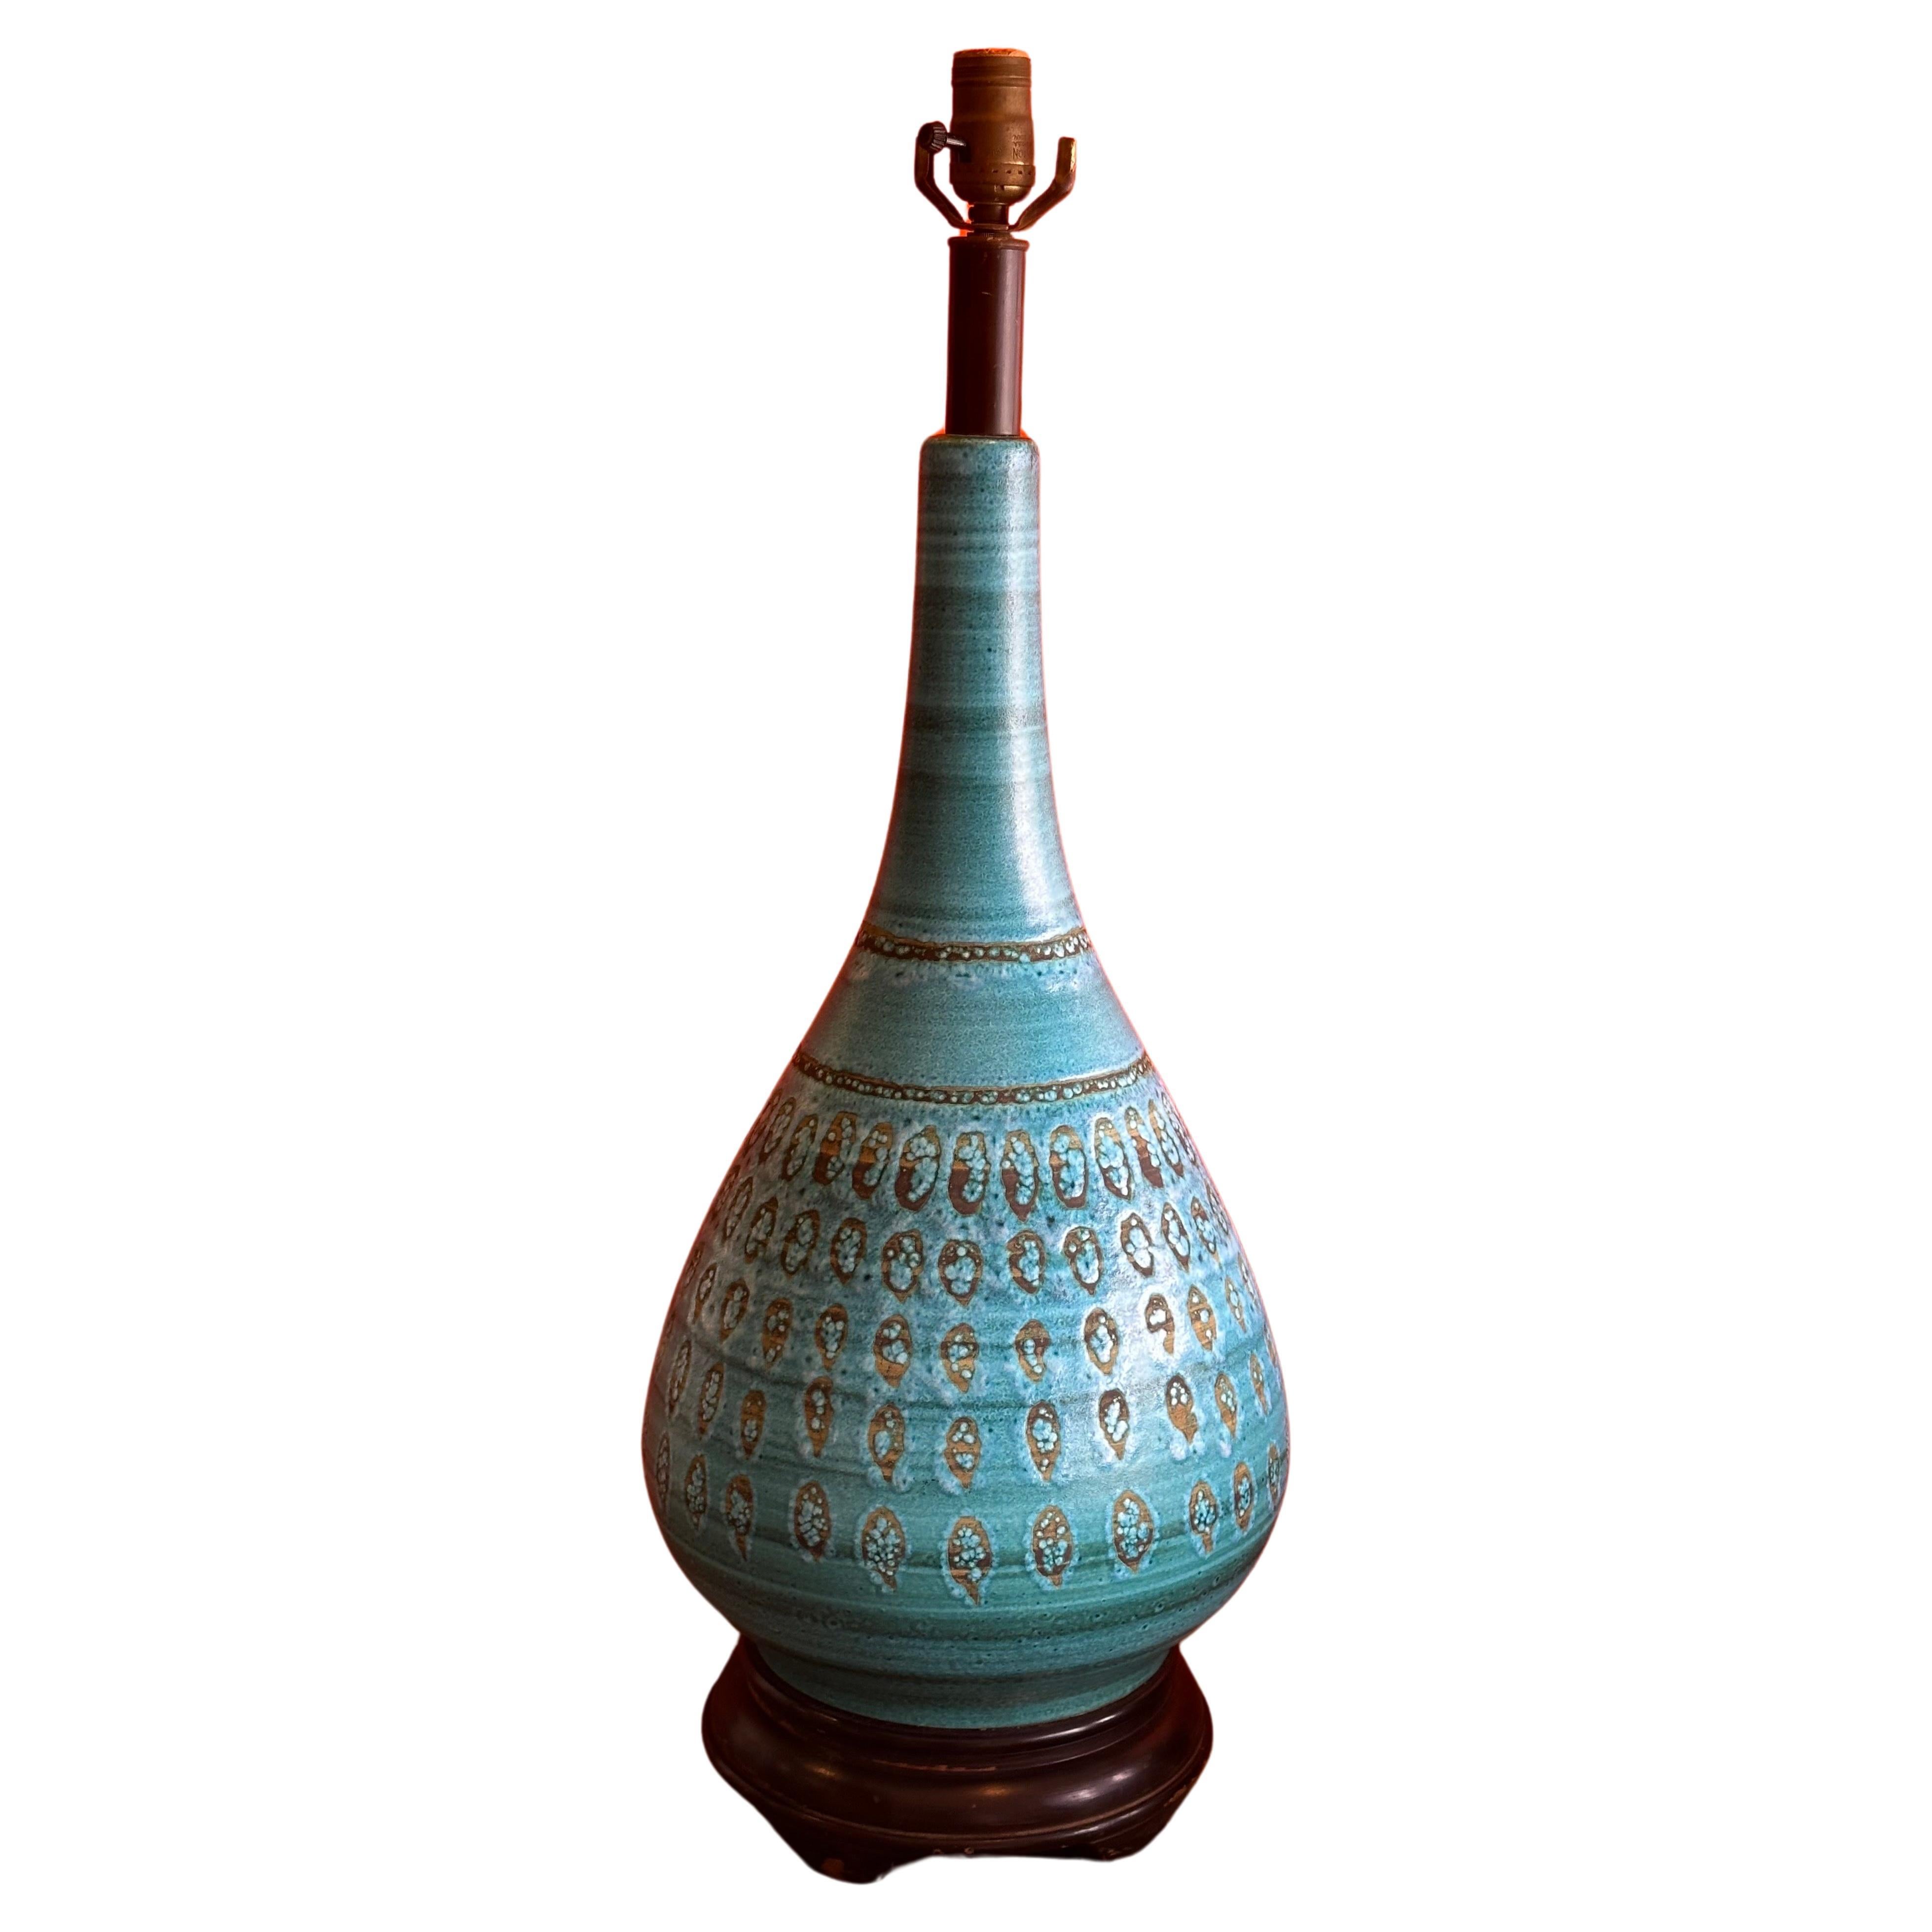 Monumentale türkis glasierte Keramiklampe von Aldo Londi für Bitossi, ca. 1960er Jahre.  Die Lampe ist in sehr gutem Zustand und misst 11,5 